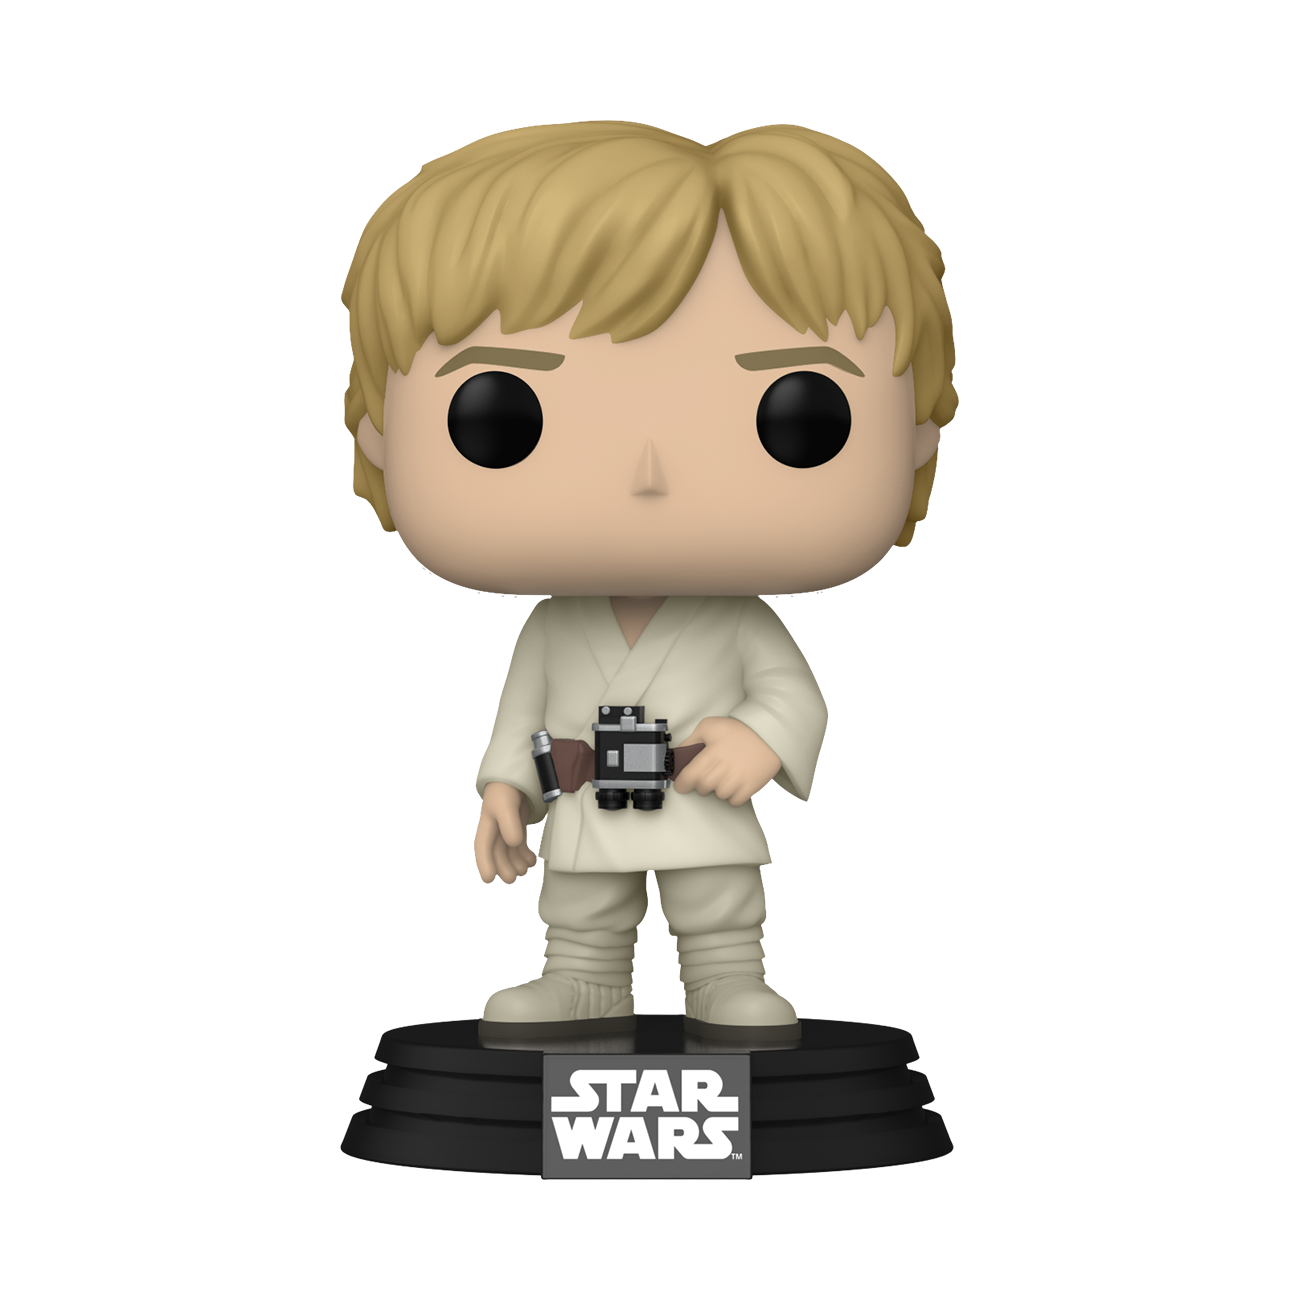 Star Wars - POP! Luke